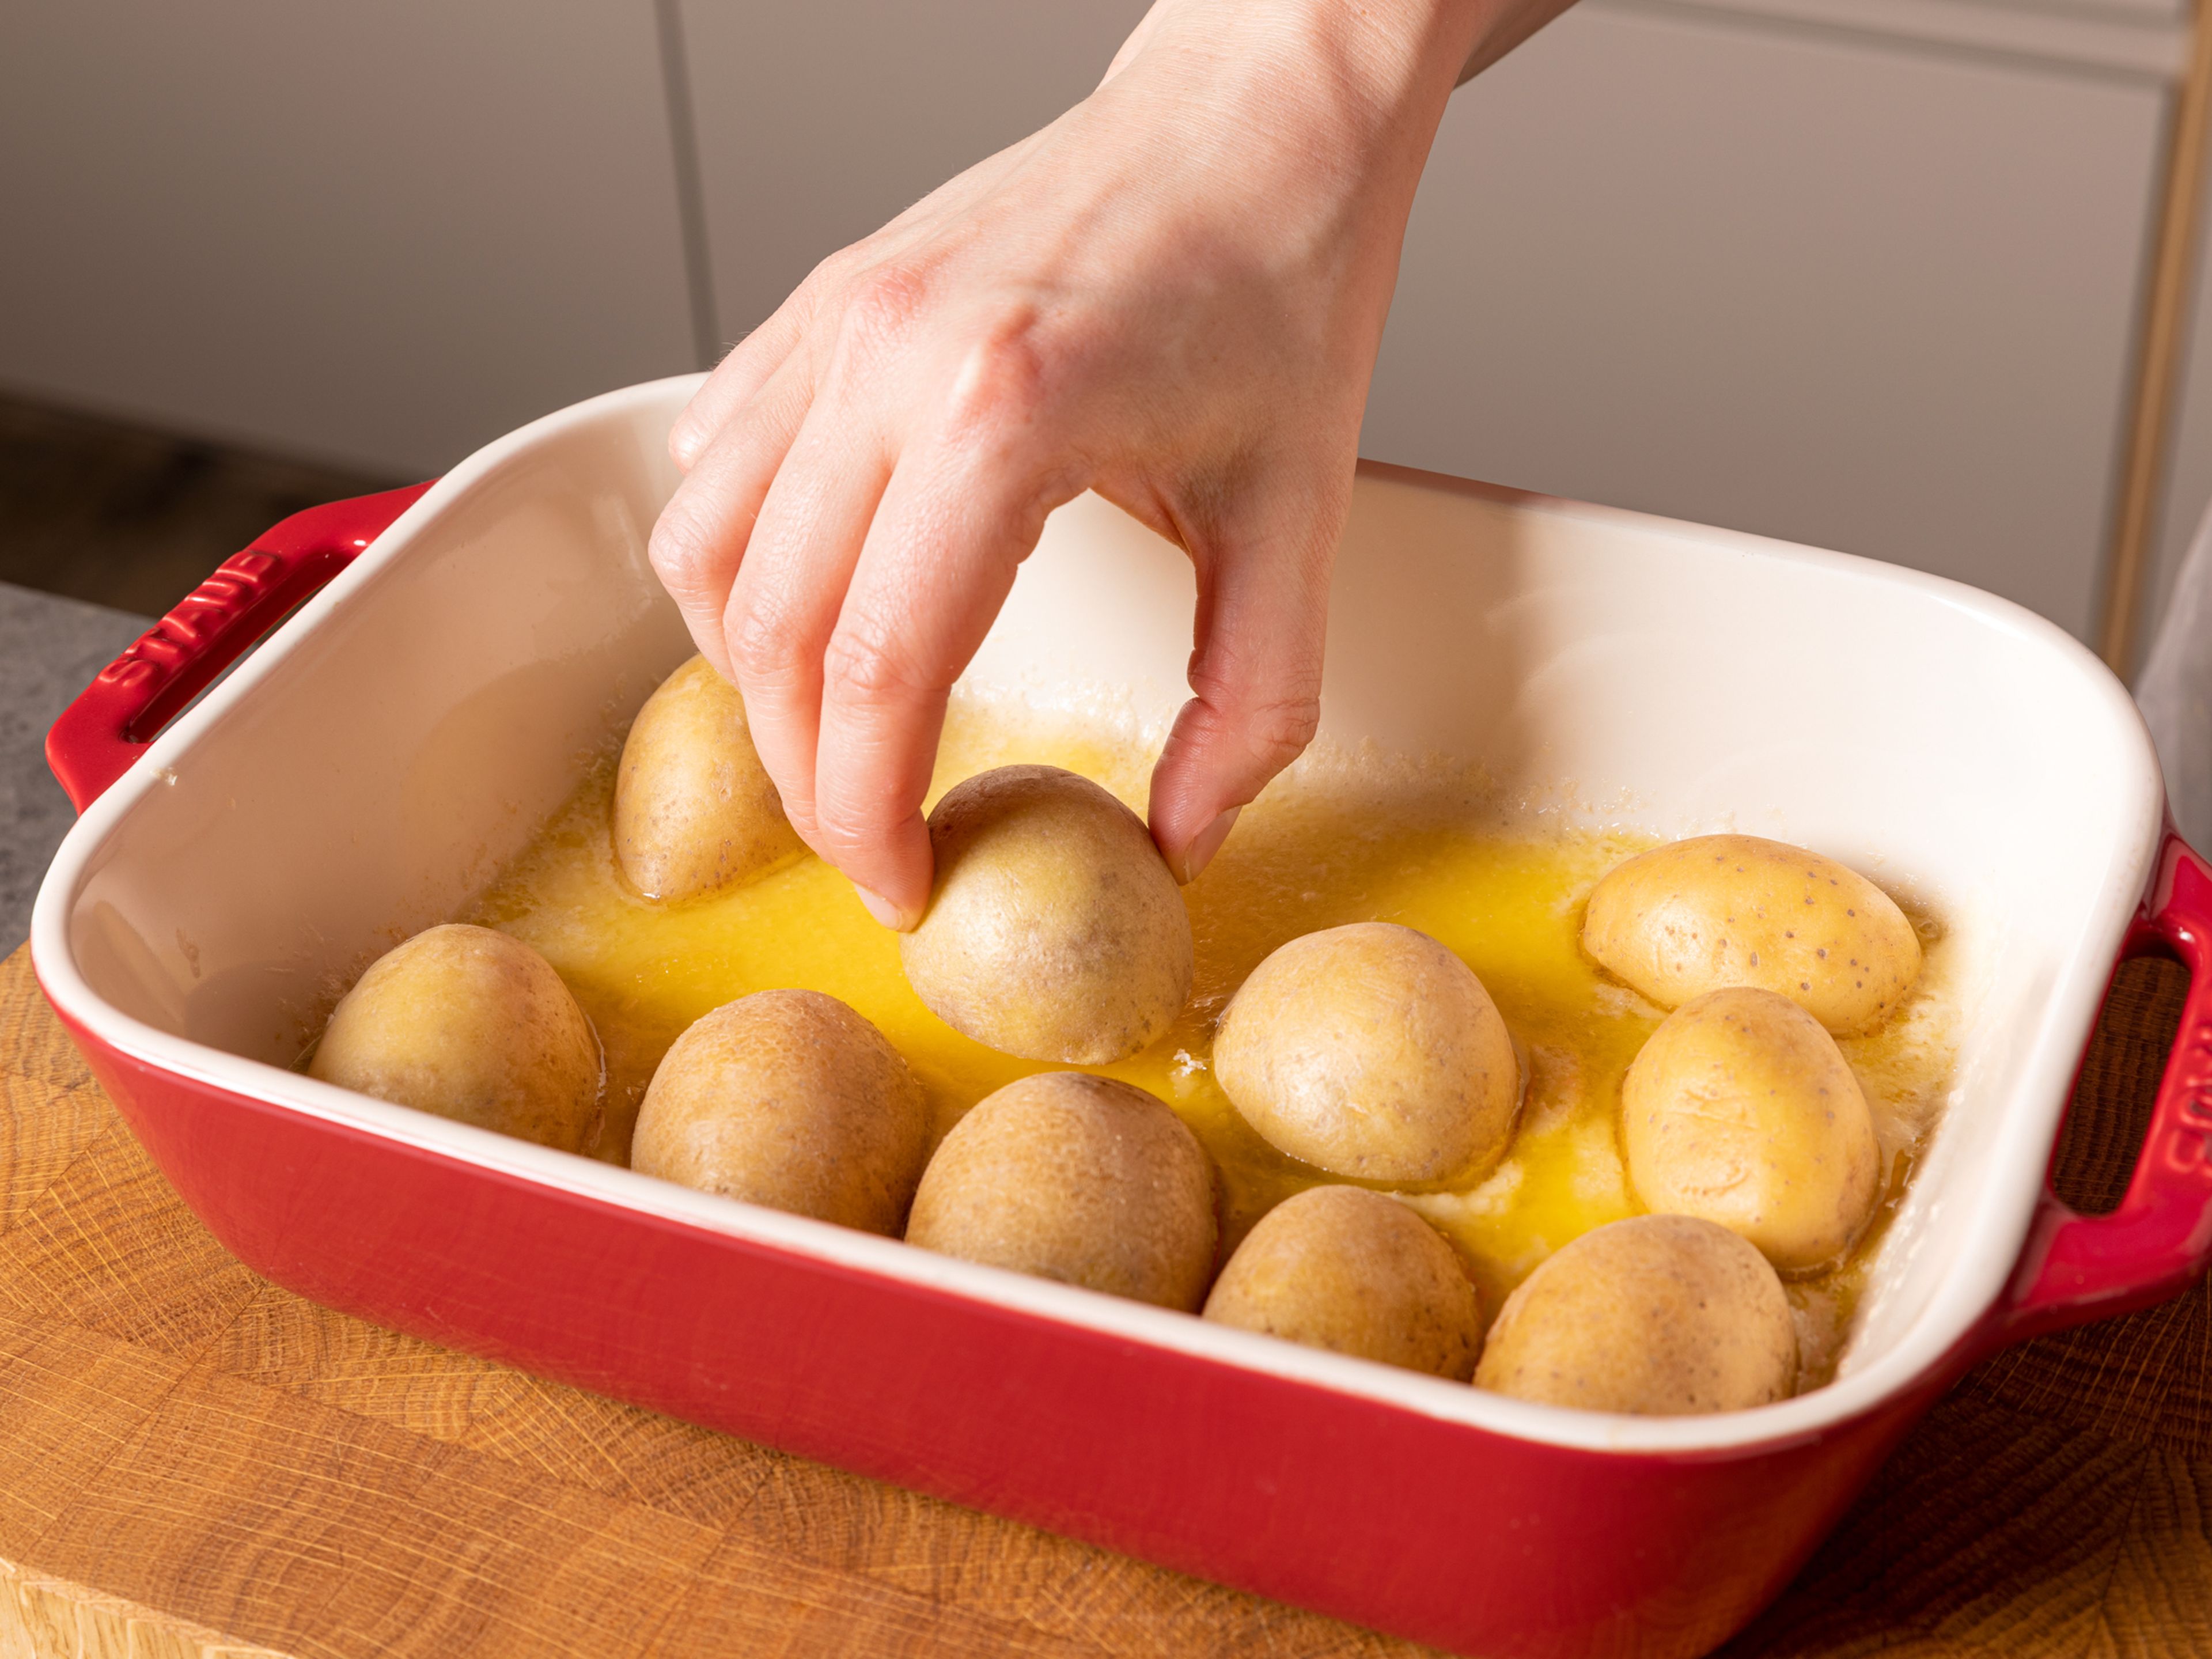 Butter in die heiße Auflaufform geben und schmelzen lassen. Dann ¾ des Parmesans gleichmäßig auf den Boden der Form geben. Die Kartoffeln mit der Schnittfläche nach unten darauf legen. Mit Salz und Pfeffer würzen und ca. 20 Min. backen.